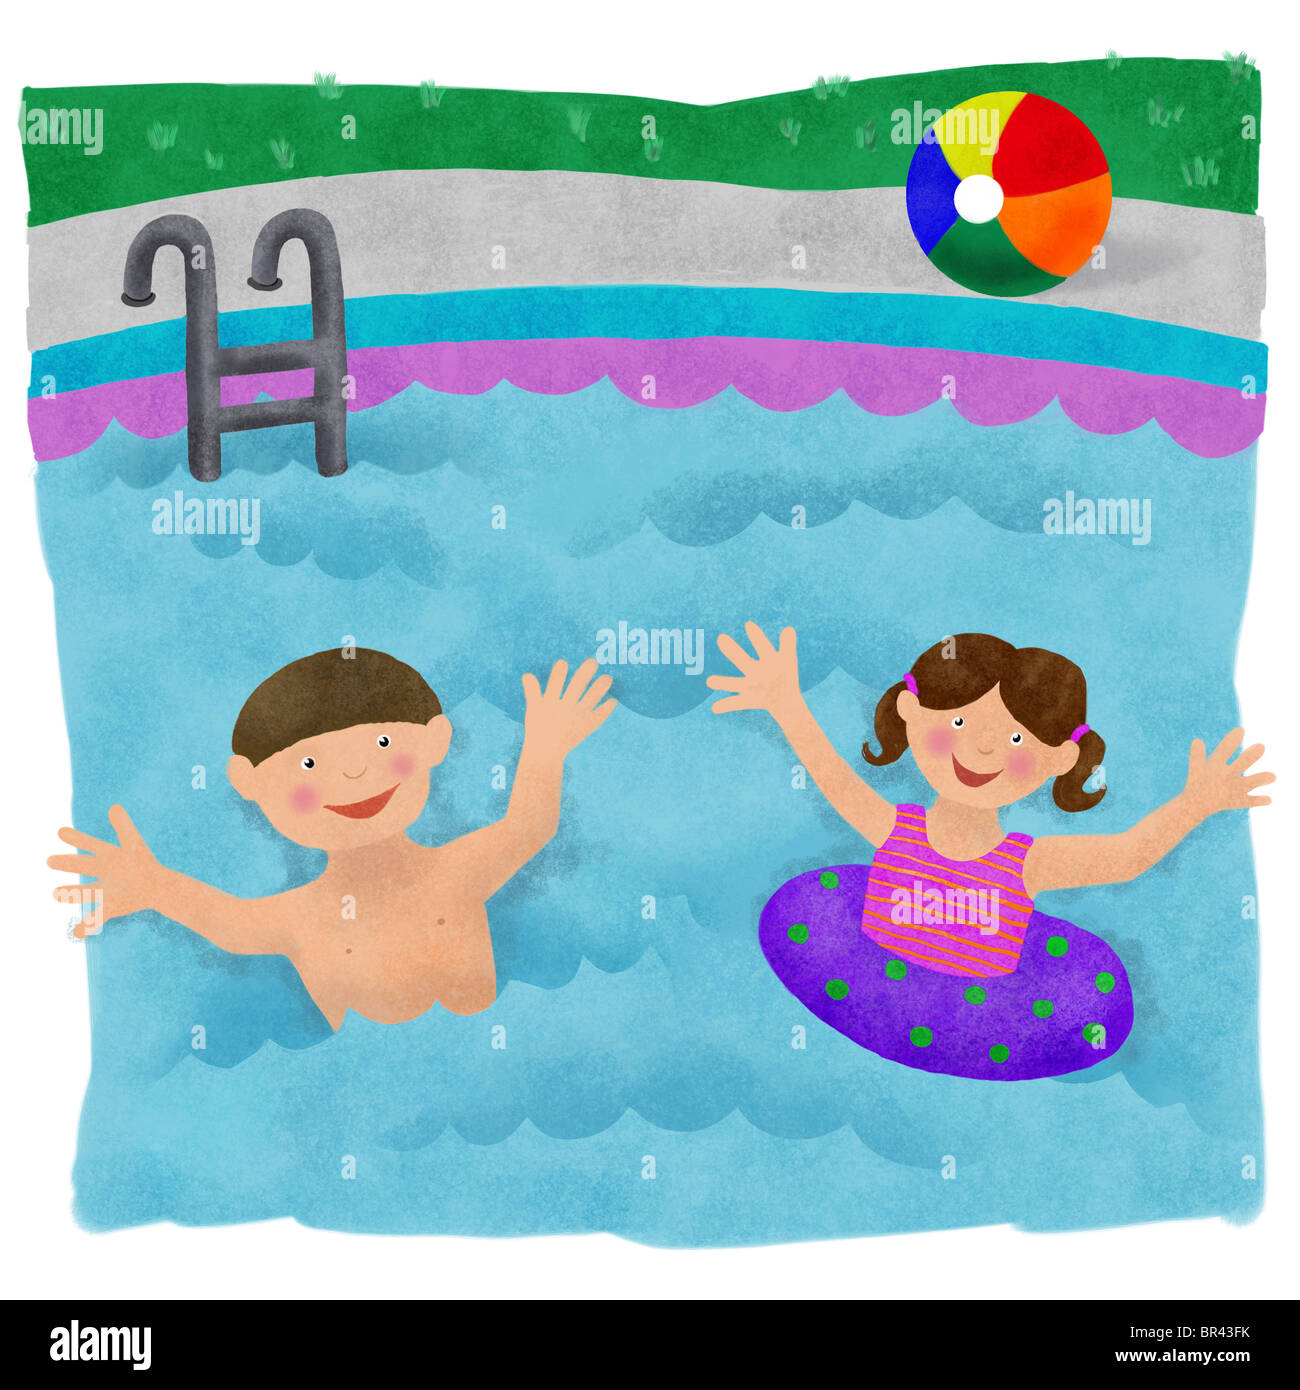 Нравится купаться. Бассейн рисунок. Бассейн детский рисунок. Бассейн картинка для детей. Нарисовать бассейн.